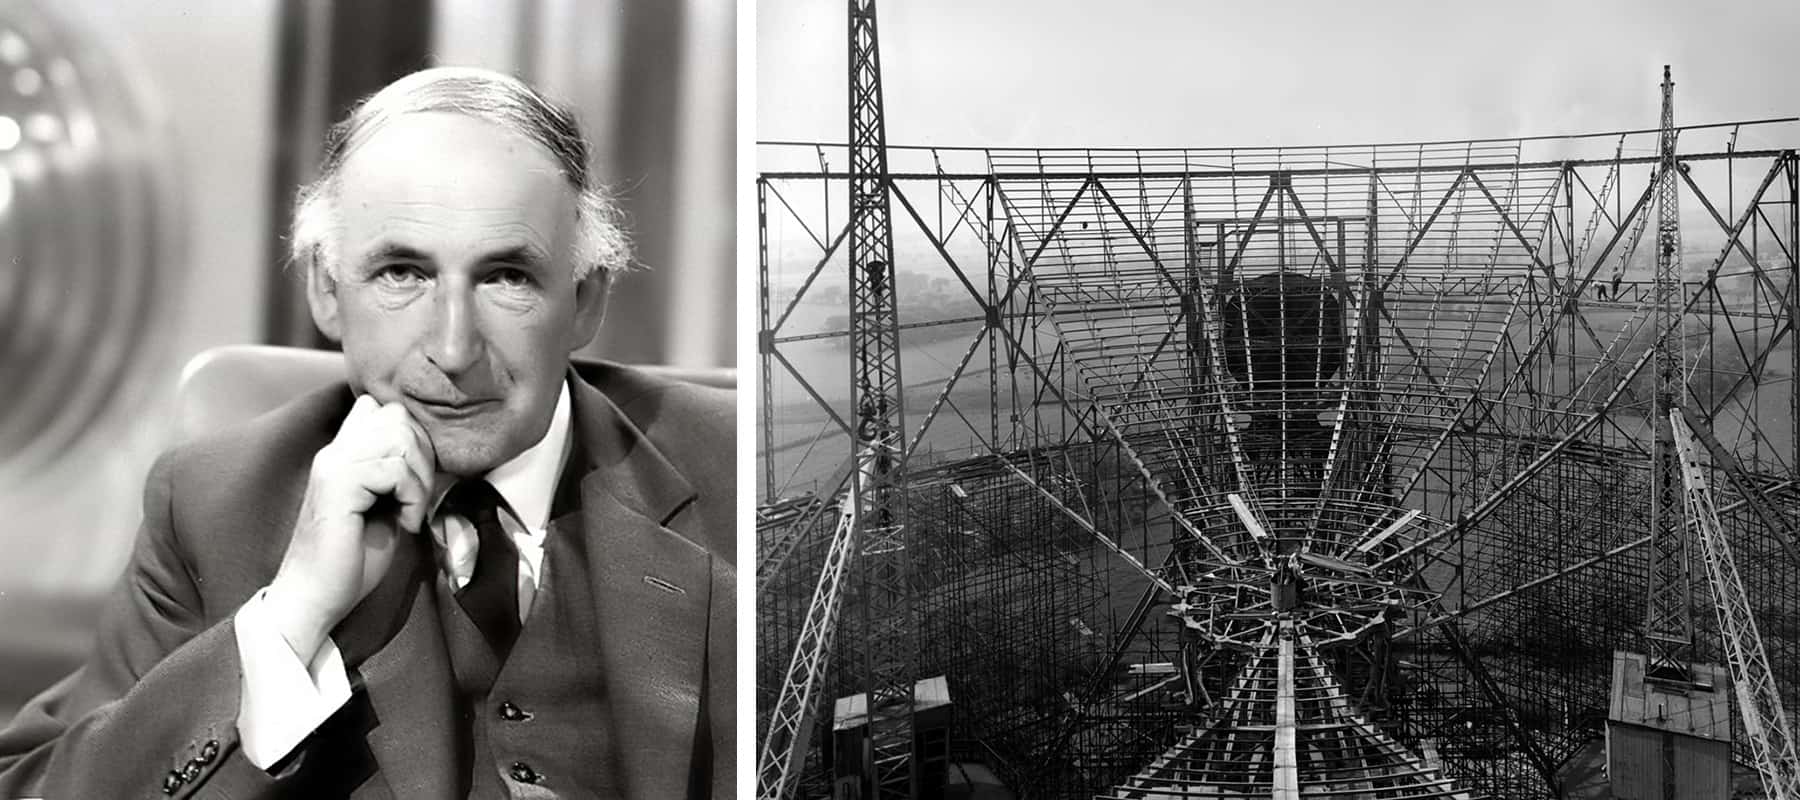 Duas fotos em preto e branco: um homem de terno e um grande telescópio em construção